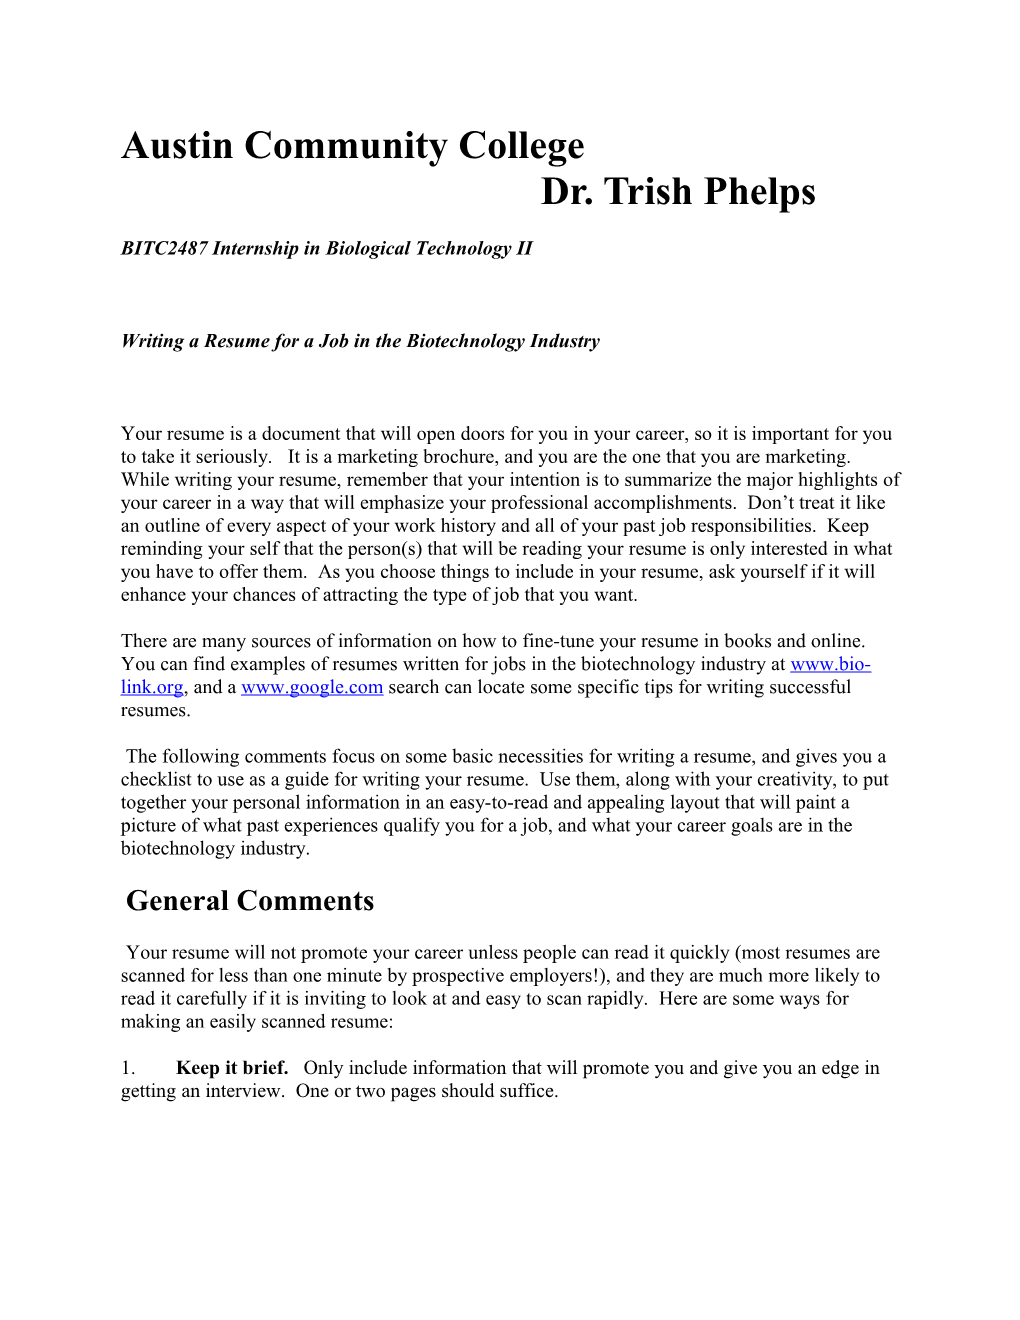 Austin Community College Dr. Trish Phelps